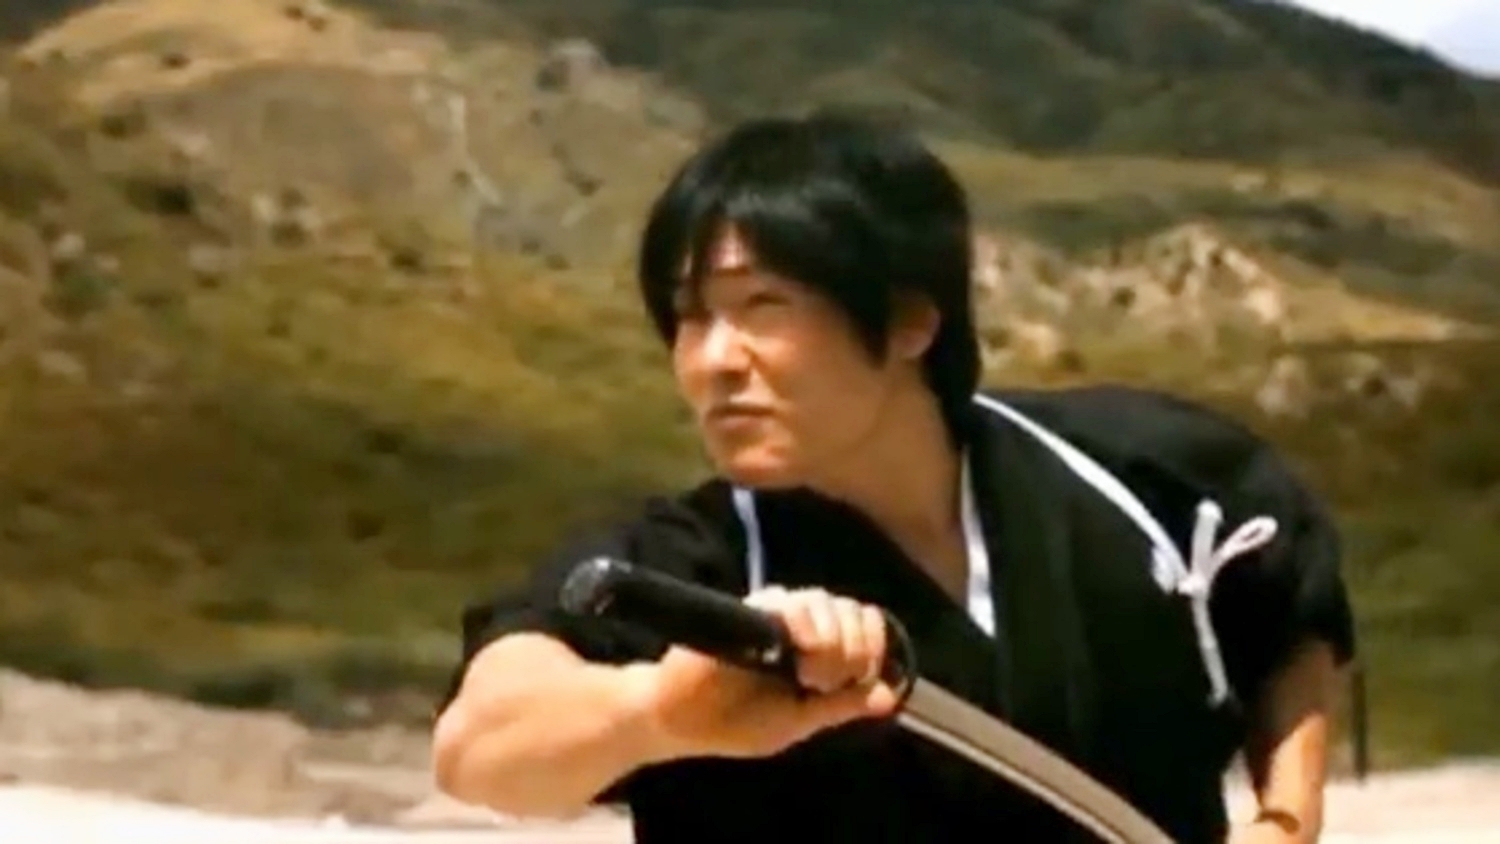 Kiếm sĩ Isao Machii có thể chém đôi viên đạn đang bay giữa không trung chỉ bằng một cú vung kiếm. Ảnh: Japanese Station.